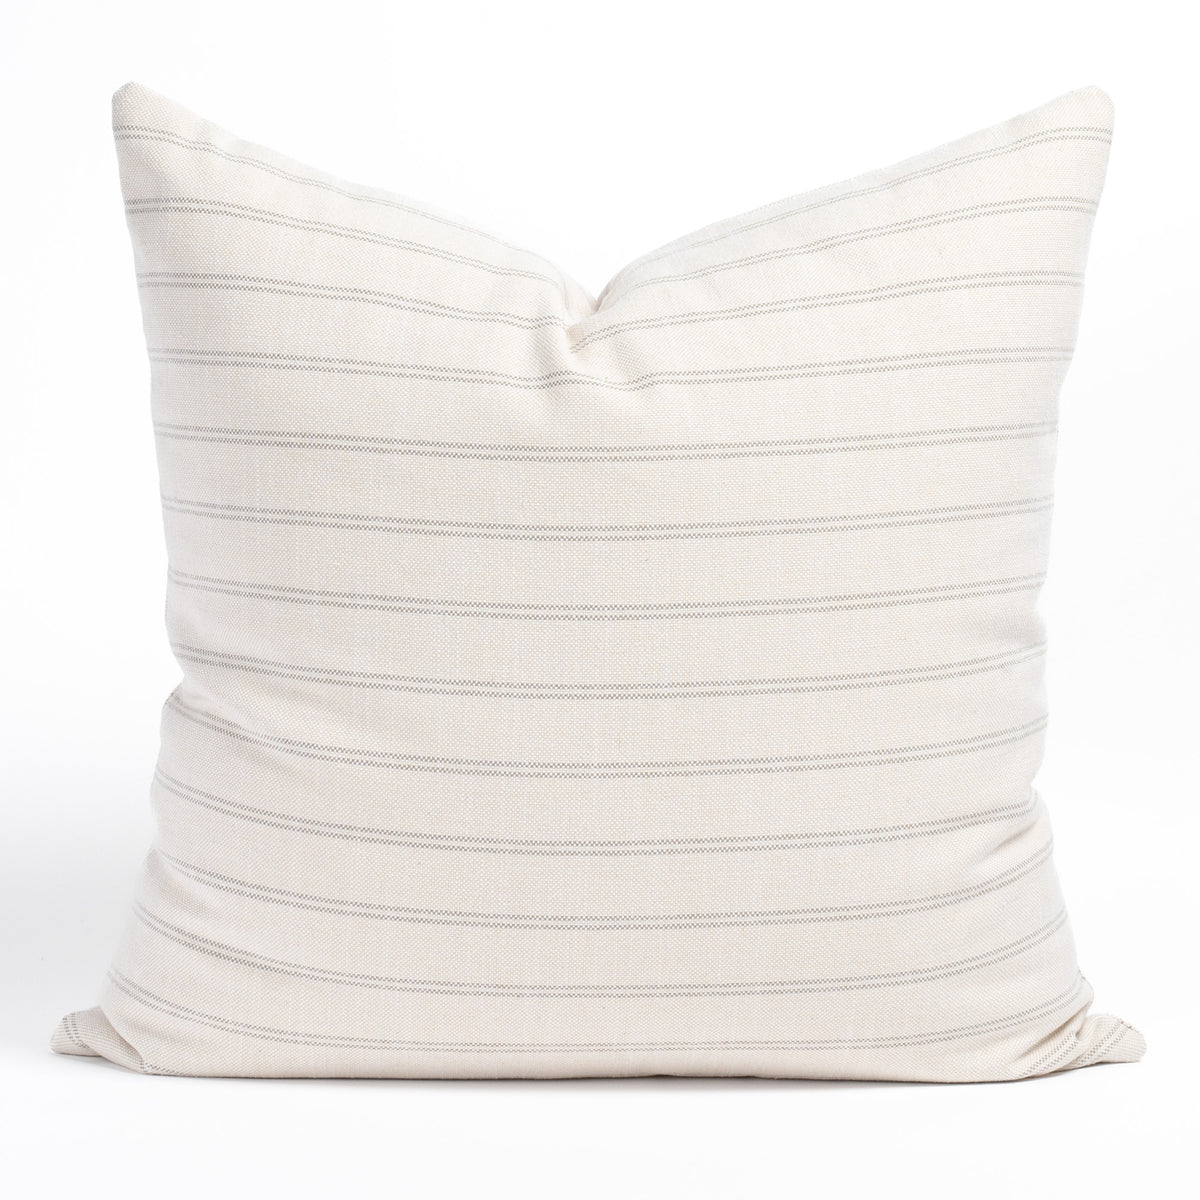 Sandy Point Striped Lumbar Pillow